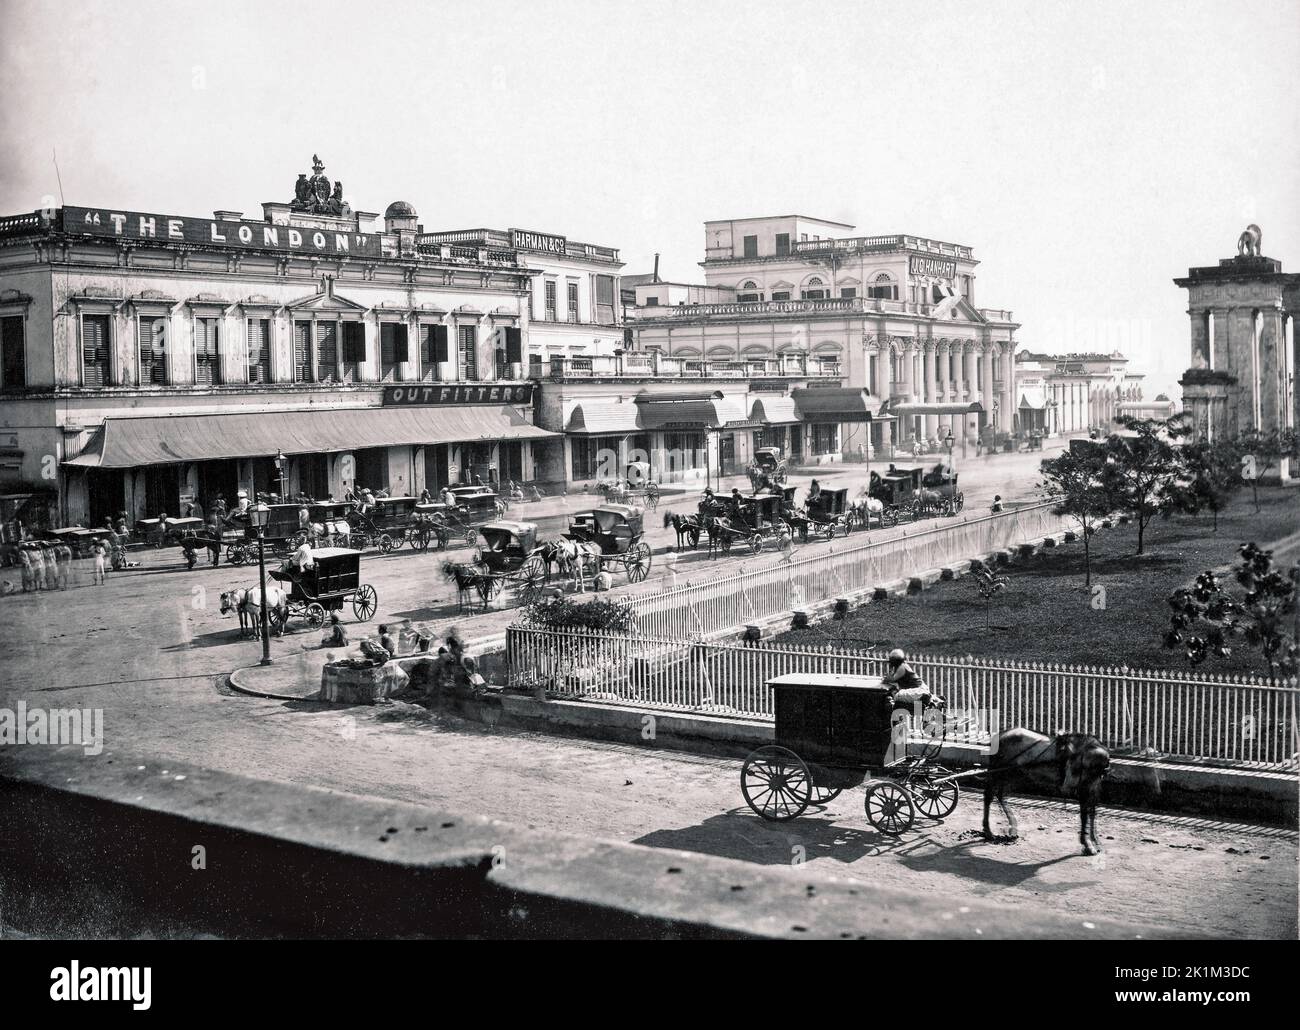 Old court House Street, Kolkata, (anciennement Calcutta), Inde dans les années 1860. Peut-être par le photographe britannique Samuel Bourne, 1834 - 1912. Banque D'Images